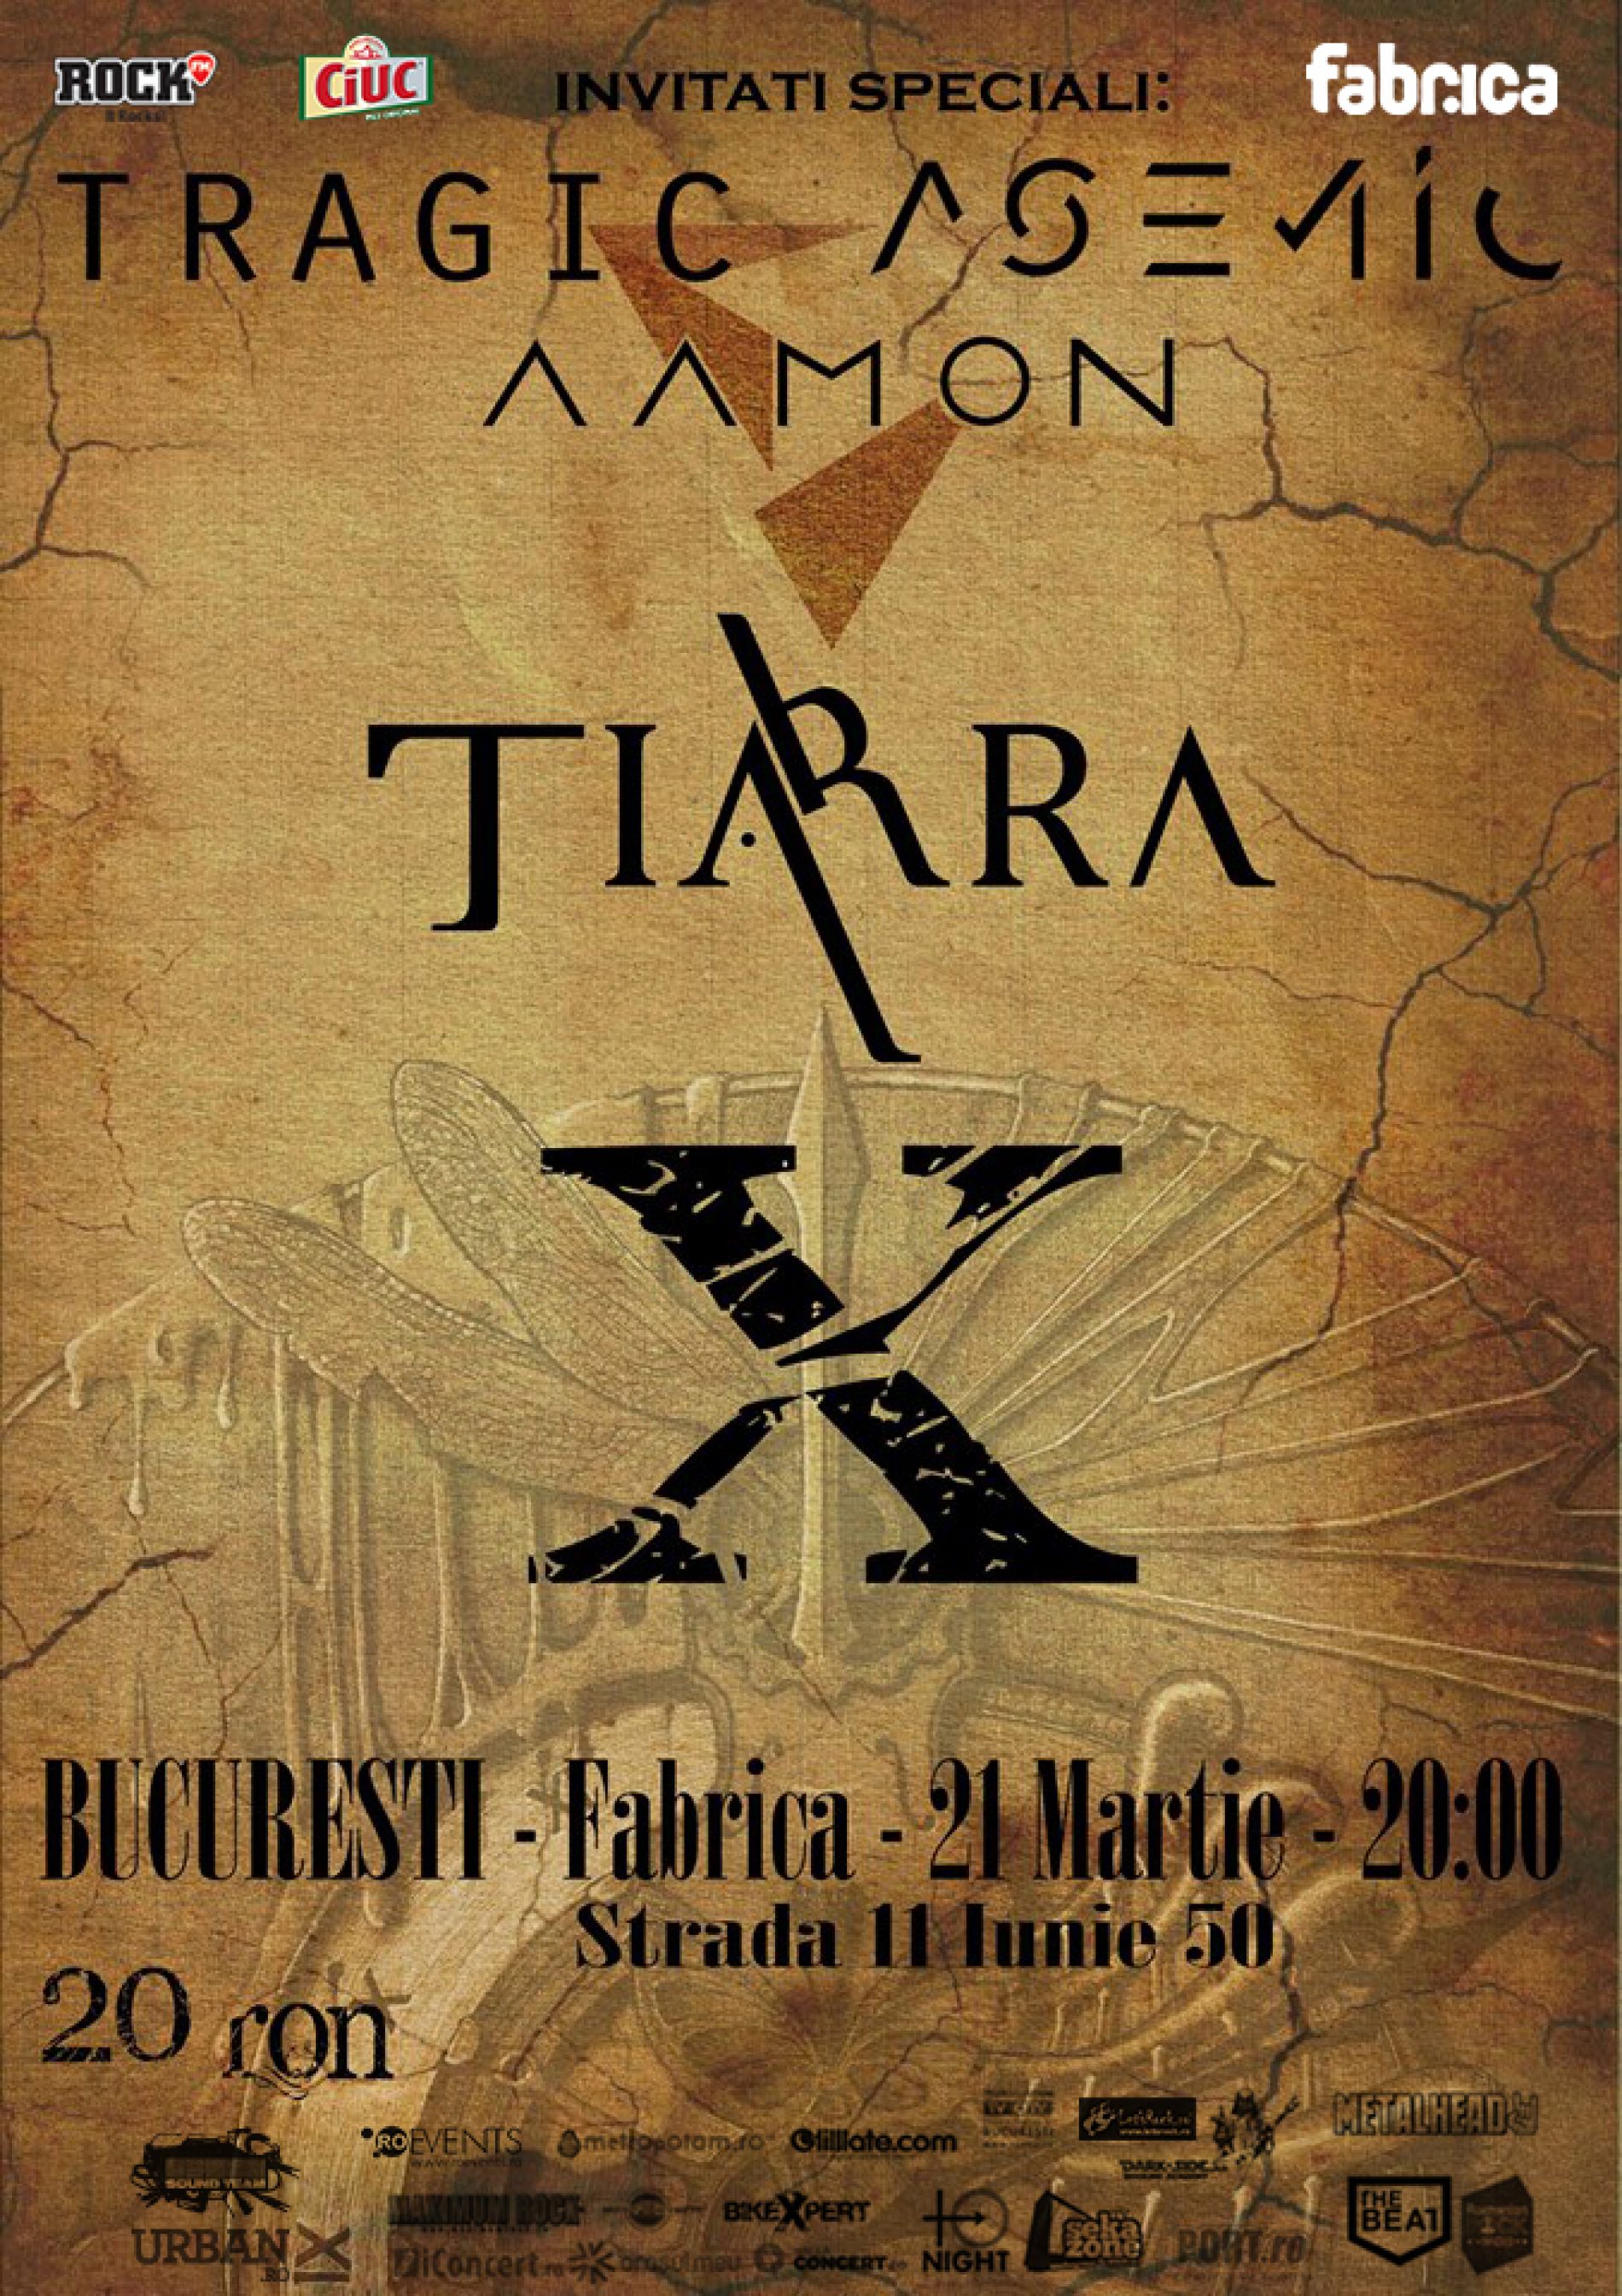 Trupa Tiarra lansează albumul “X”